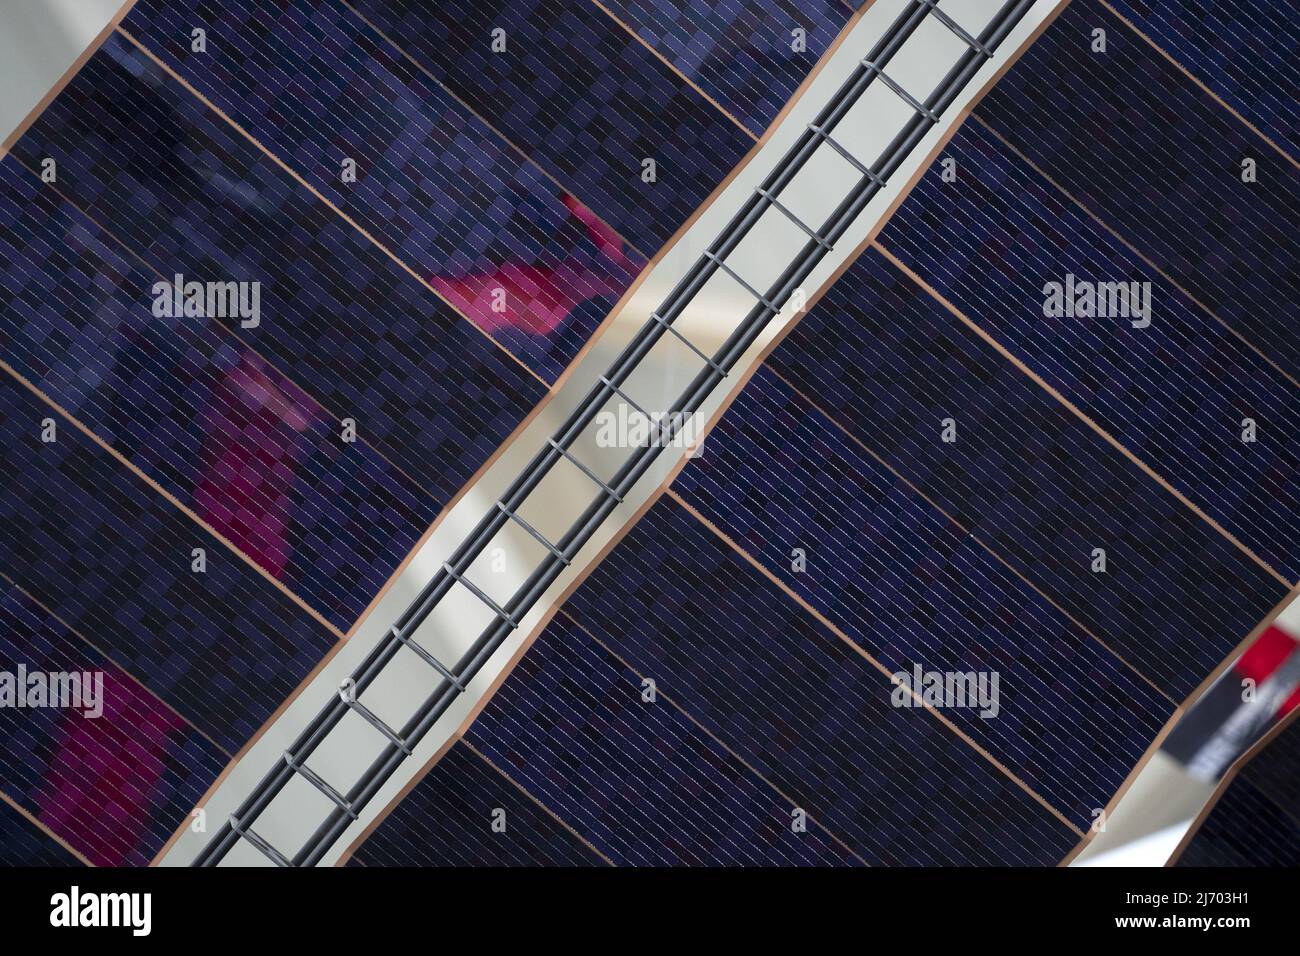 dettaglio pannello solare satellitare in primo piano Foto Stock